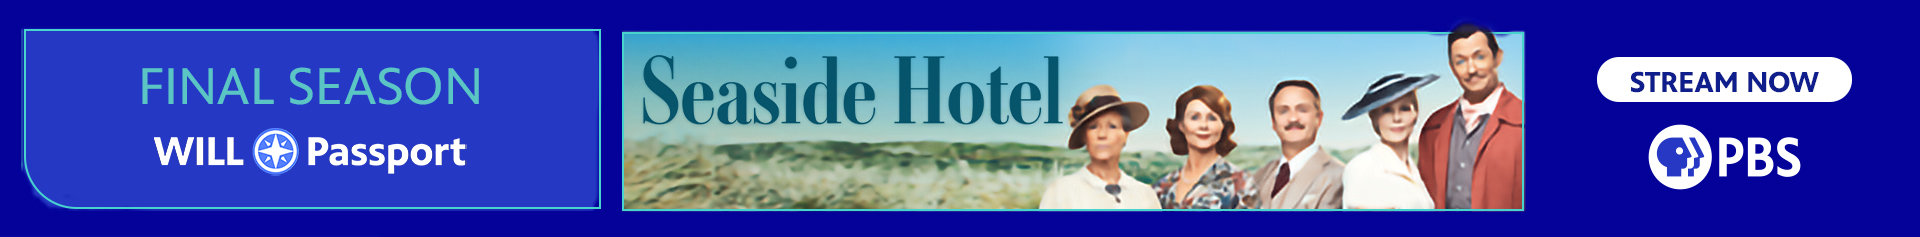 PBS Series: Seaside Hotel